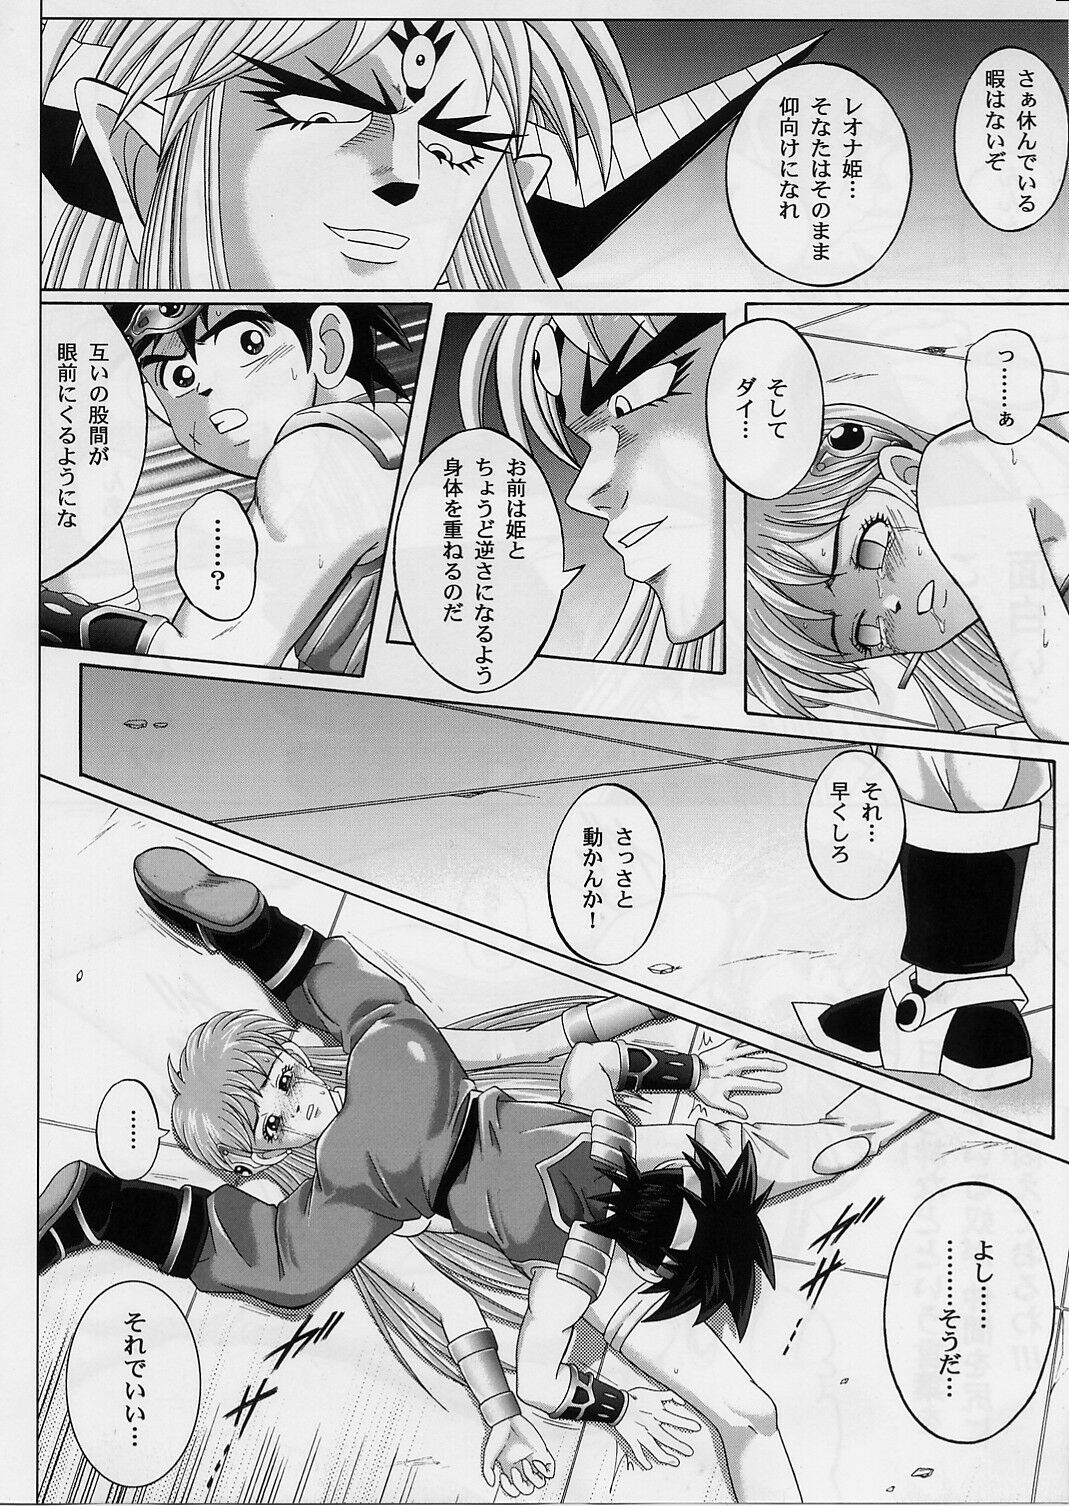 [Cyclone (Izumi, Reizei)] DIME ALLIANCE 2 (Dragon Quest Dai no Daibouken) page 19 full